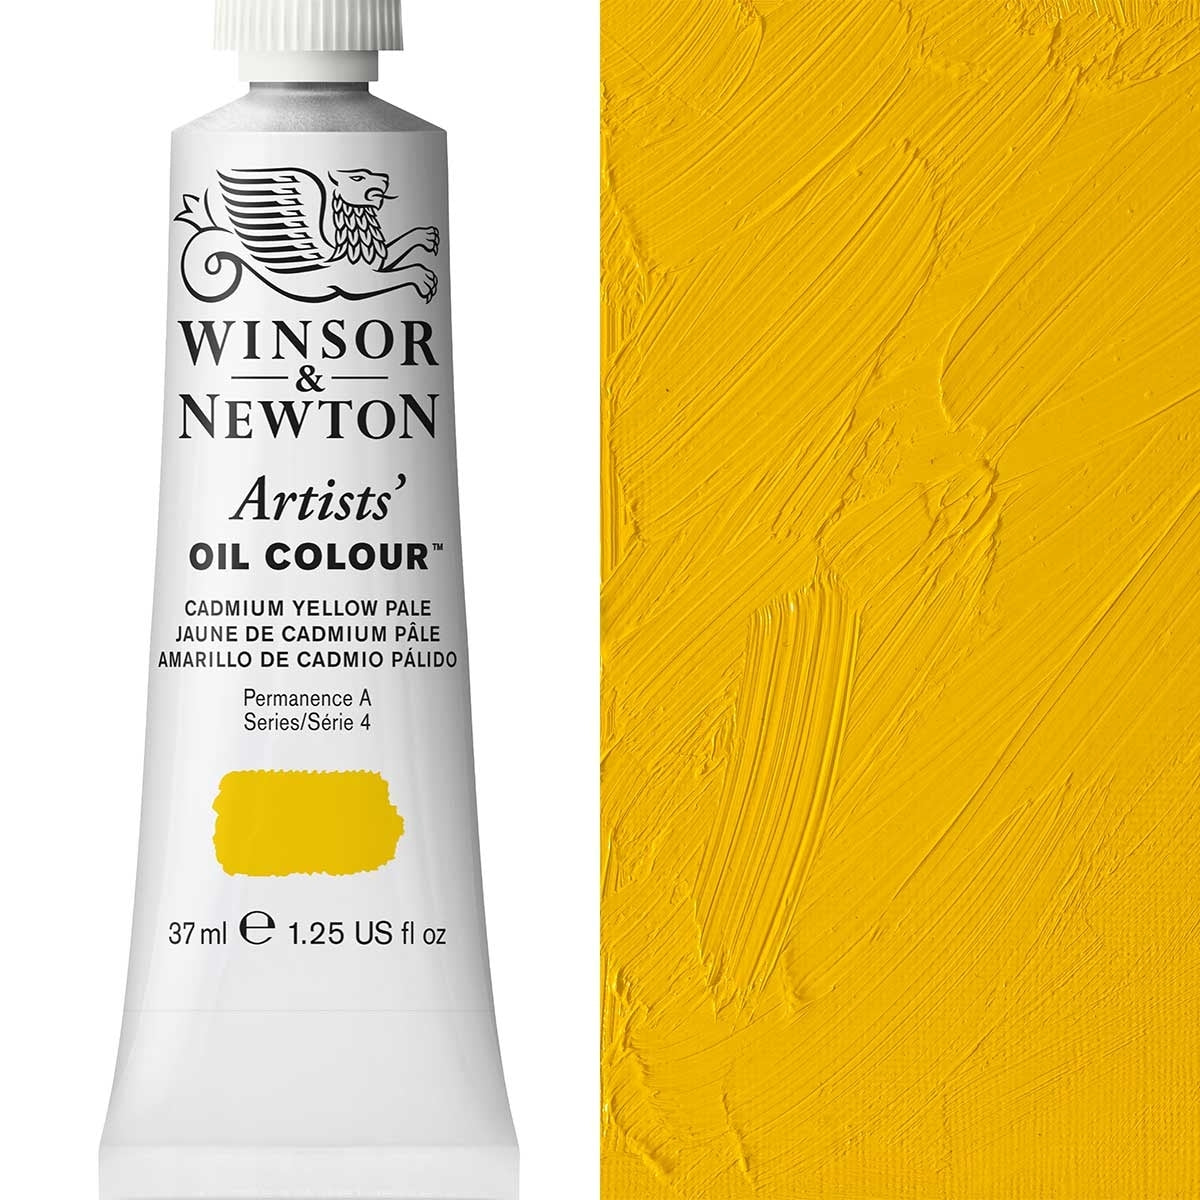 Winsor et Newton - Couleur d'huile des artistes - 37 ml - Cadmium jaune pâle